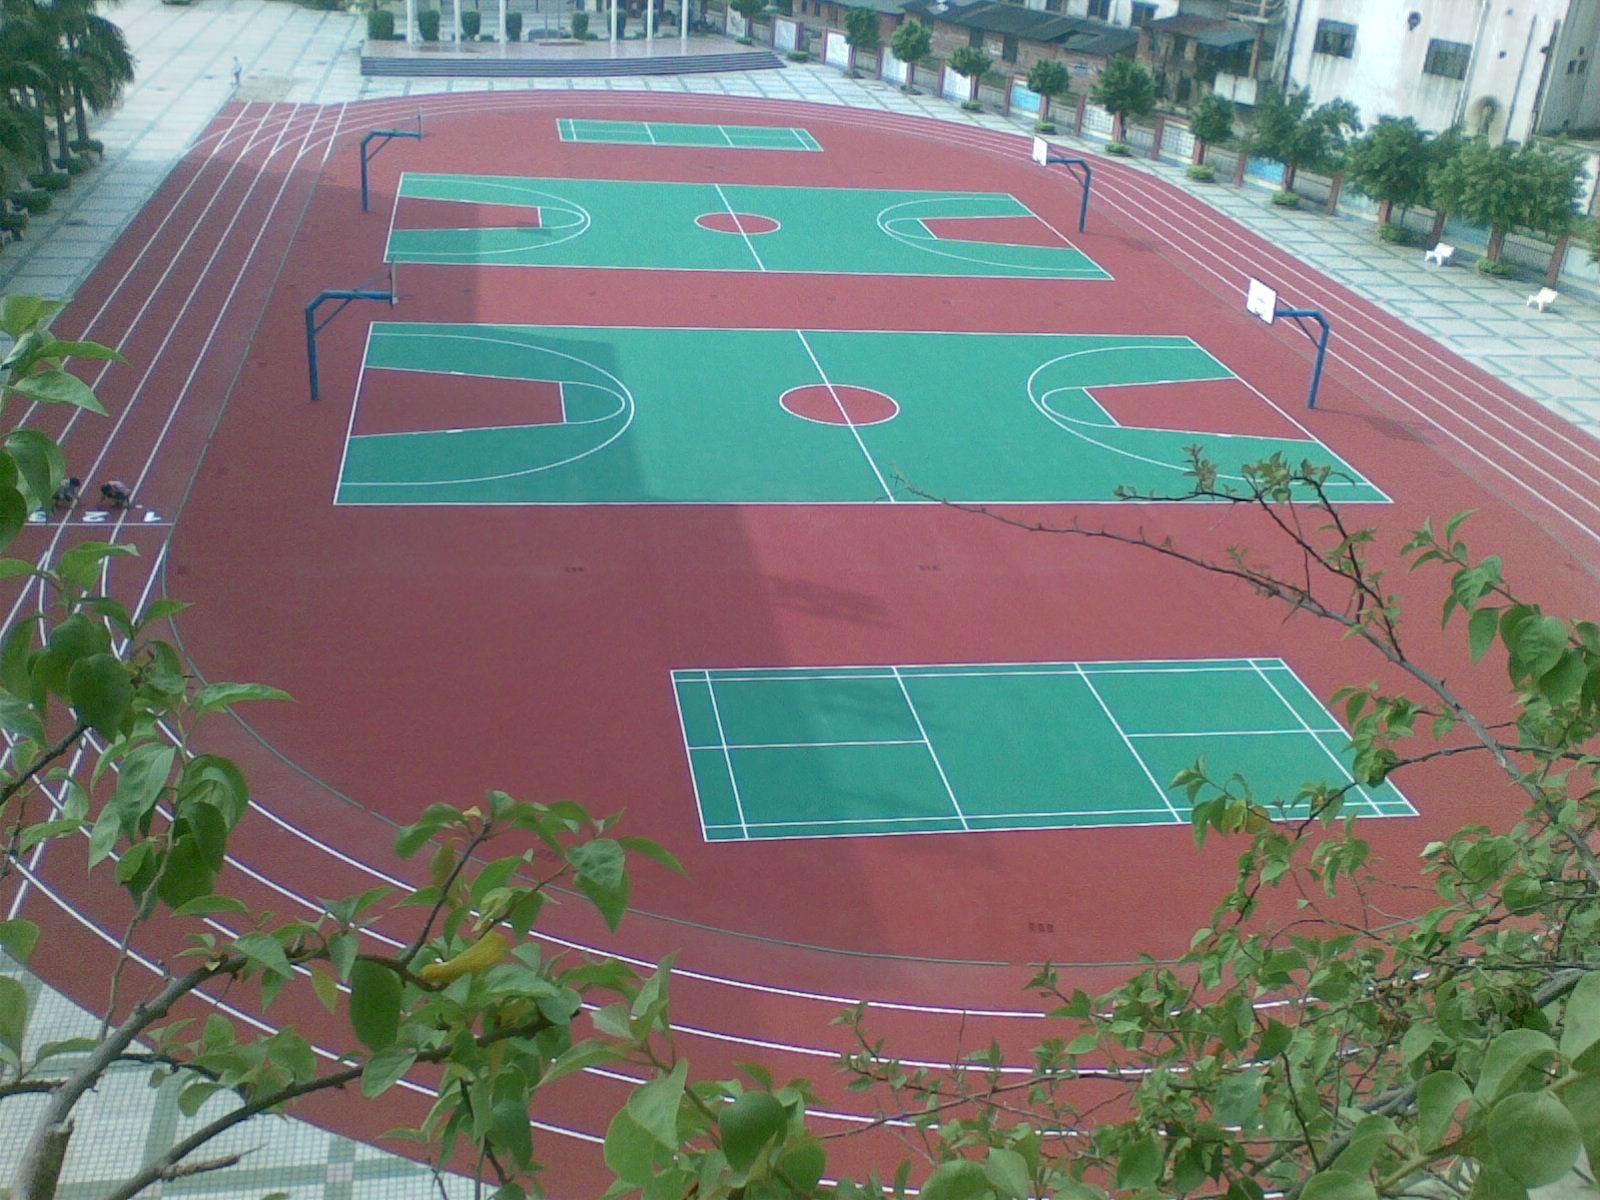 北京 篮球场施工单位天津篮球场建设